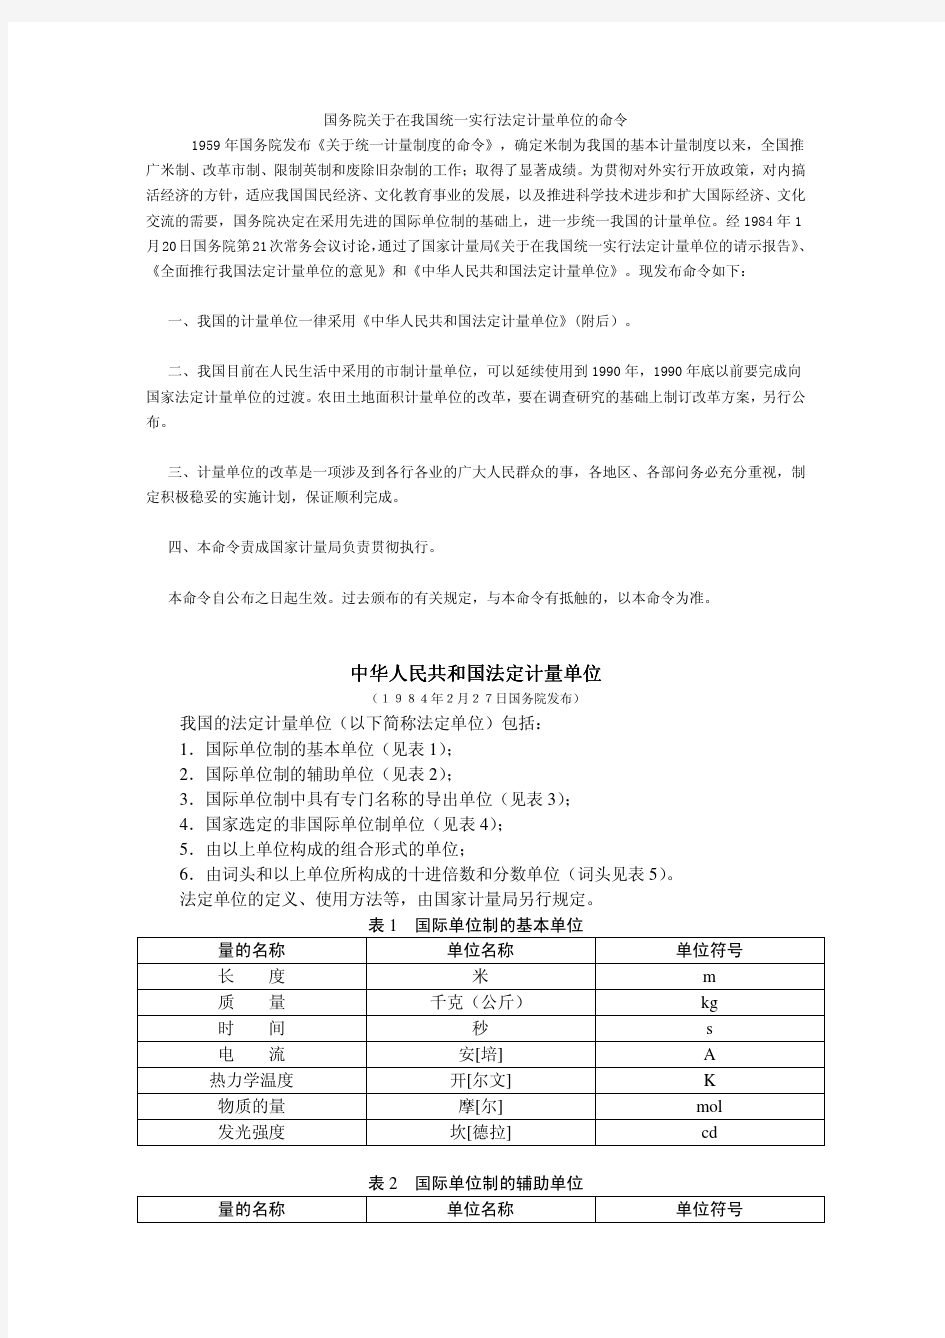 中华人民共和国法定计量单位(1984年2月27日国务院发布)